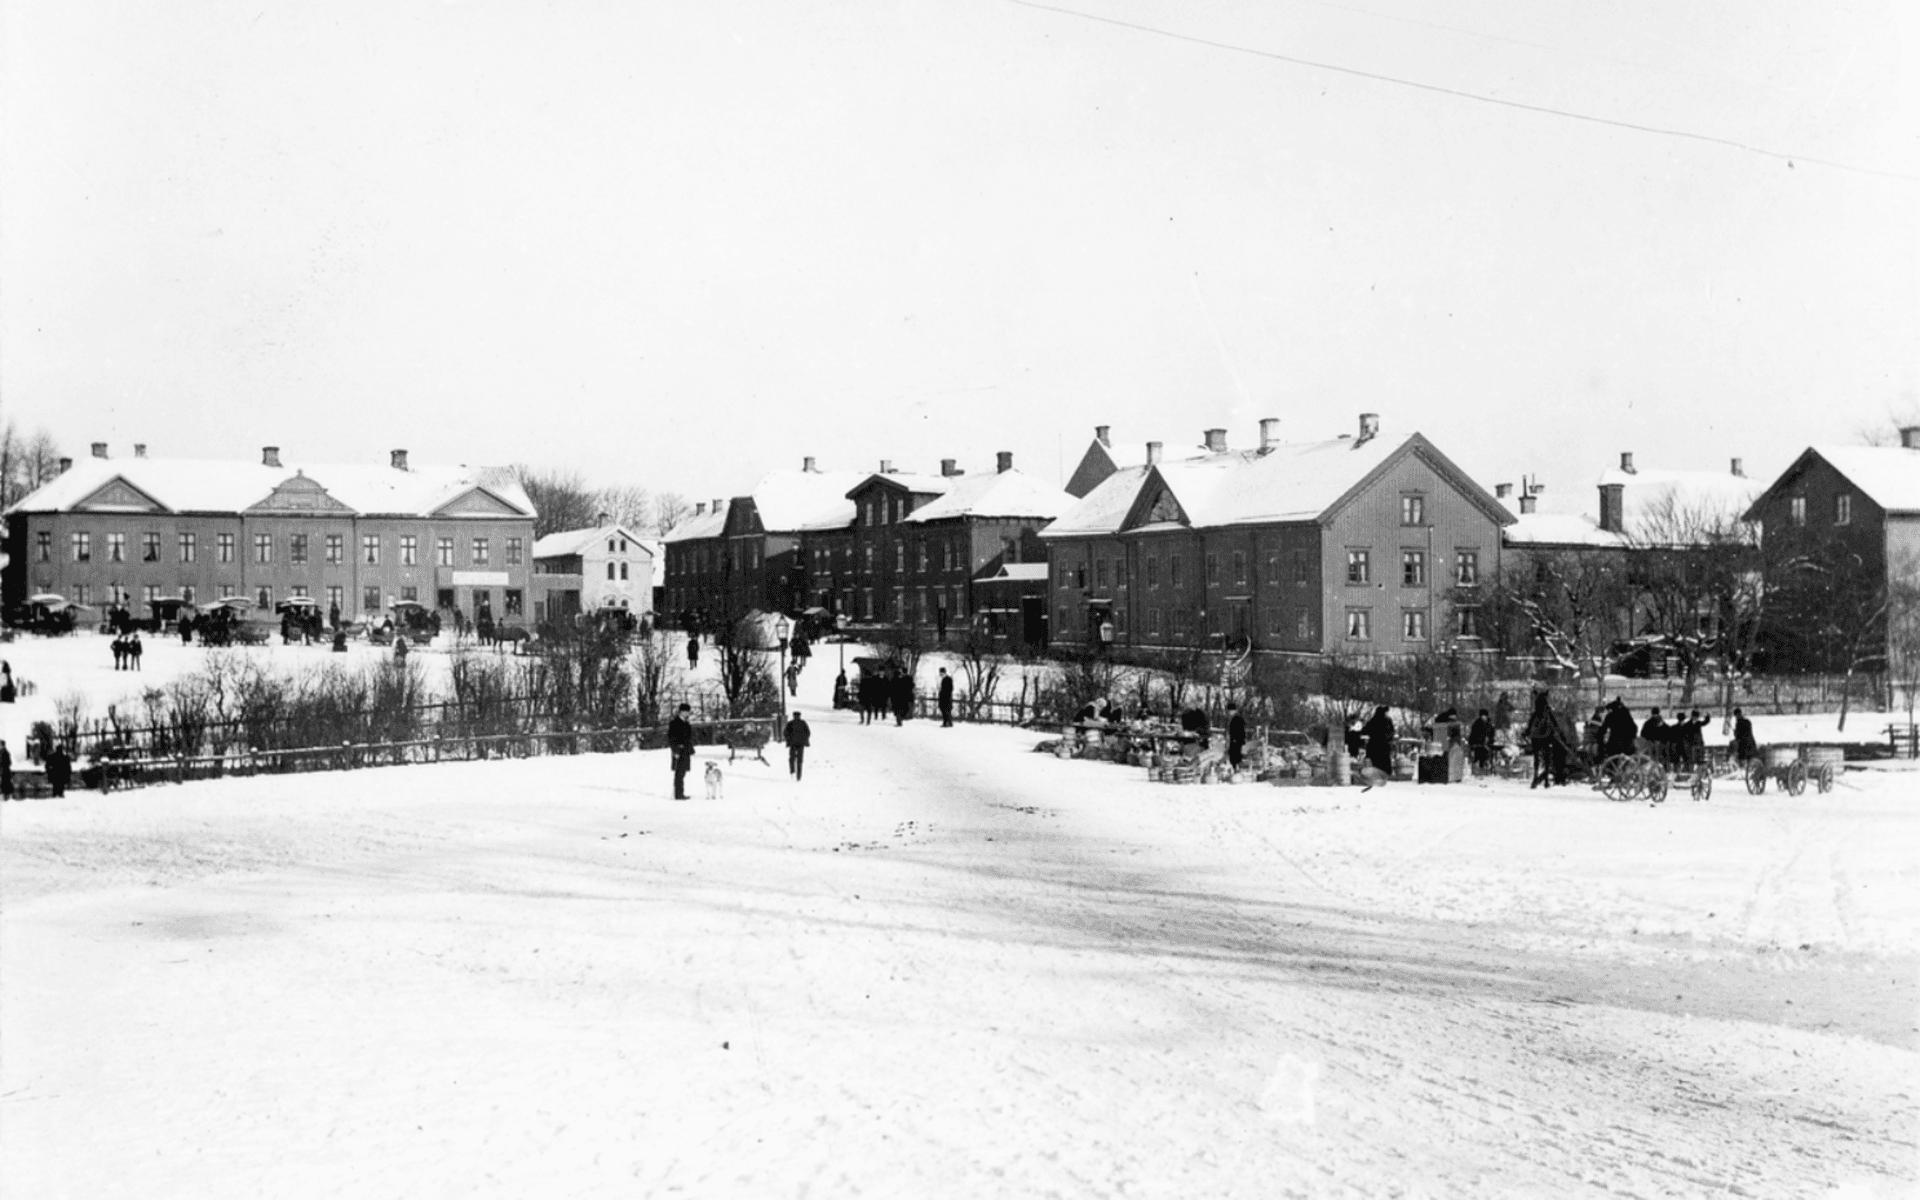 Stora torget fotograferat från Lilla torget. På bilden syns människor och djur i rörelse samt viss handelsverksamhet. Fotografering - 1900.